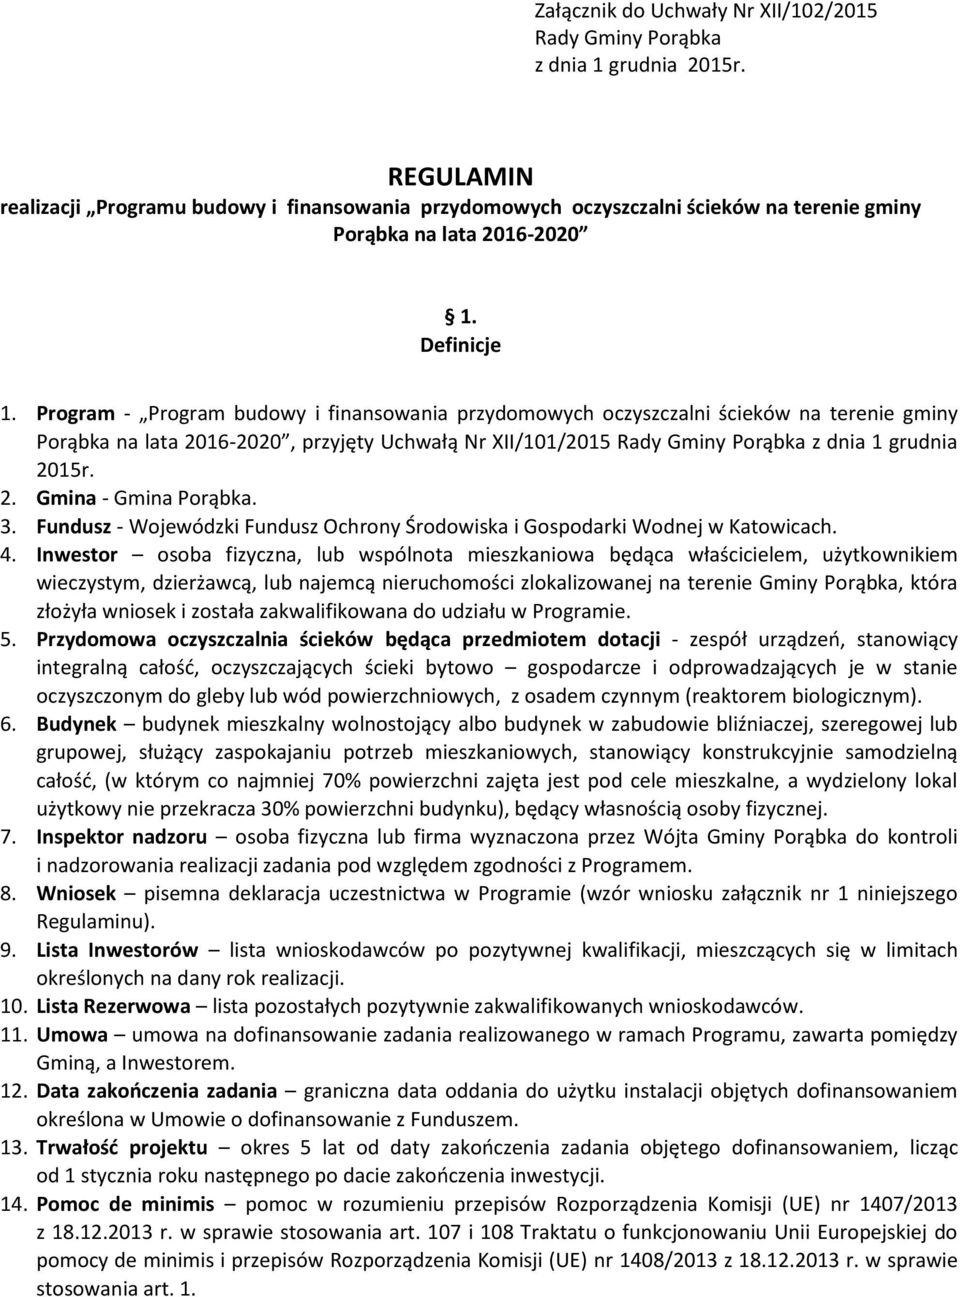 Program - Program budowy i finansowania przydomowych oczyszczalni ścieków na terenie gminy Porąbka na lata 2016-2020, przyjęty Uchwałą Nr XII/101/2015 Rady Gminy Porąbka z dnia 1 grudnia 2015r. 2. Gmina - Gmina Porąbka.